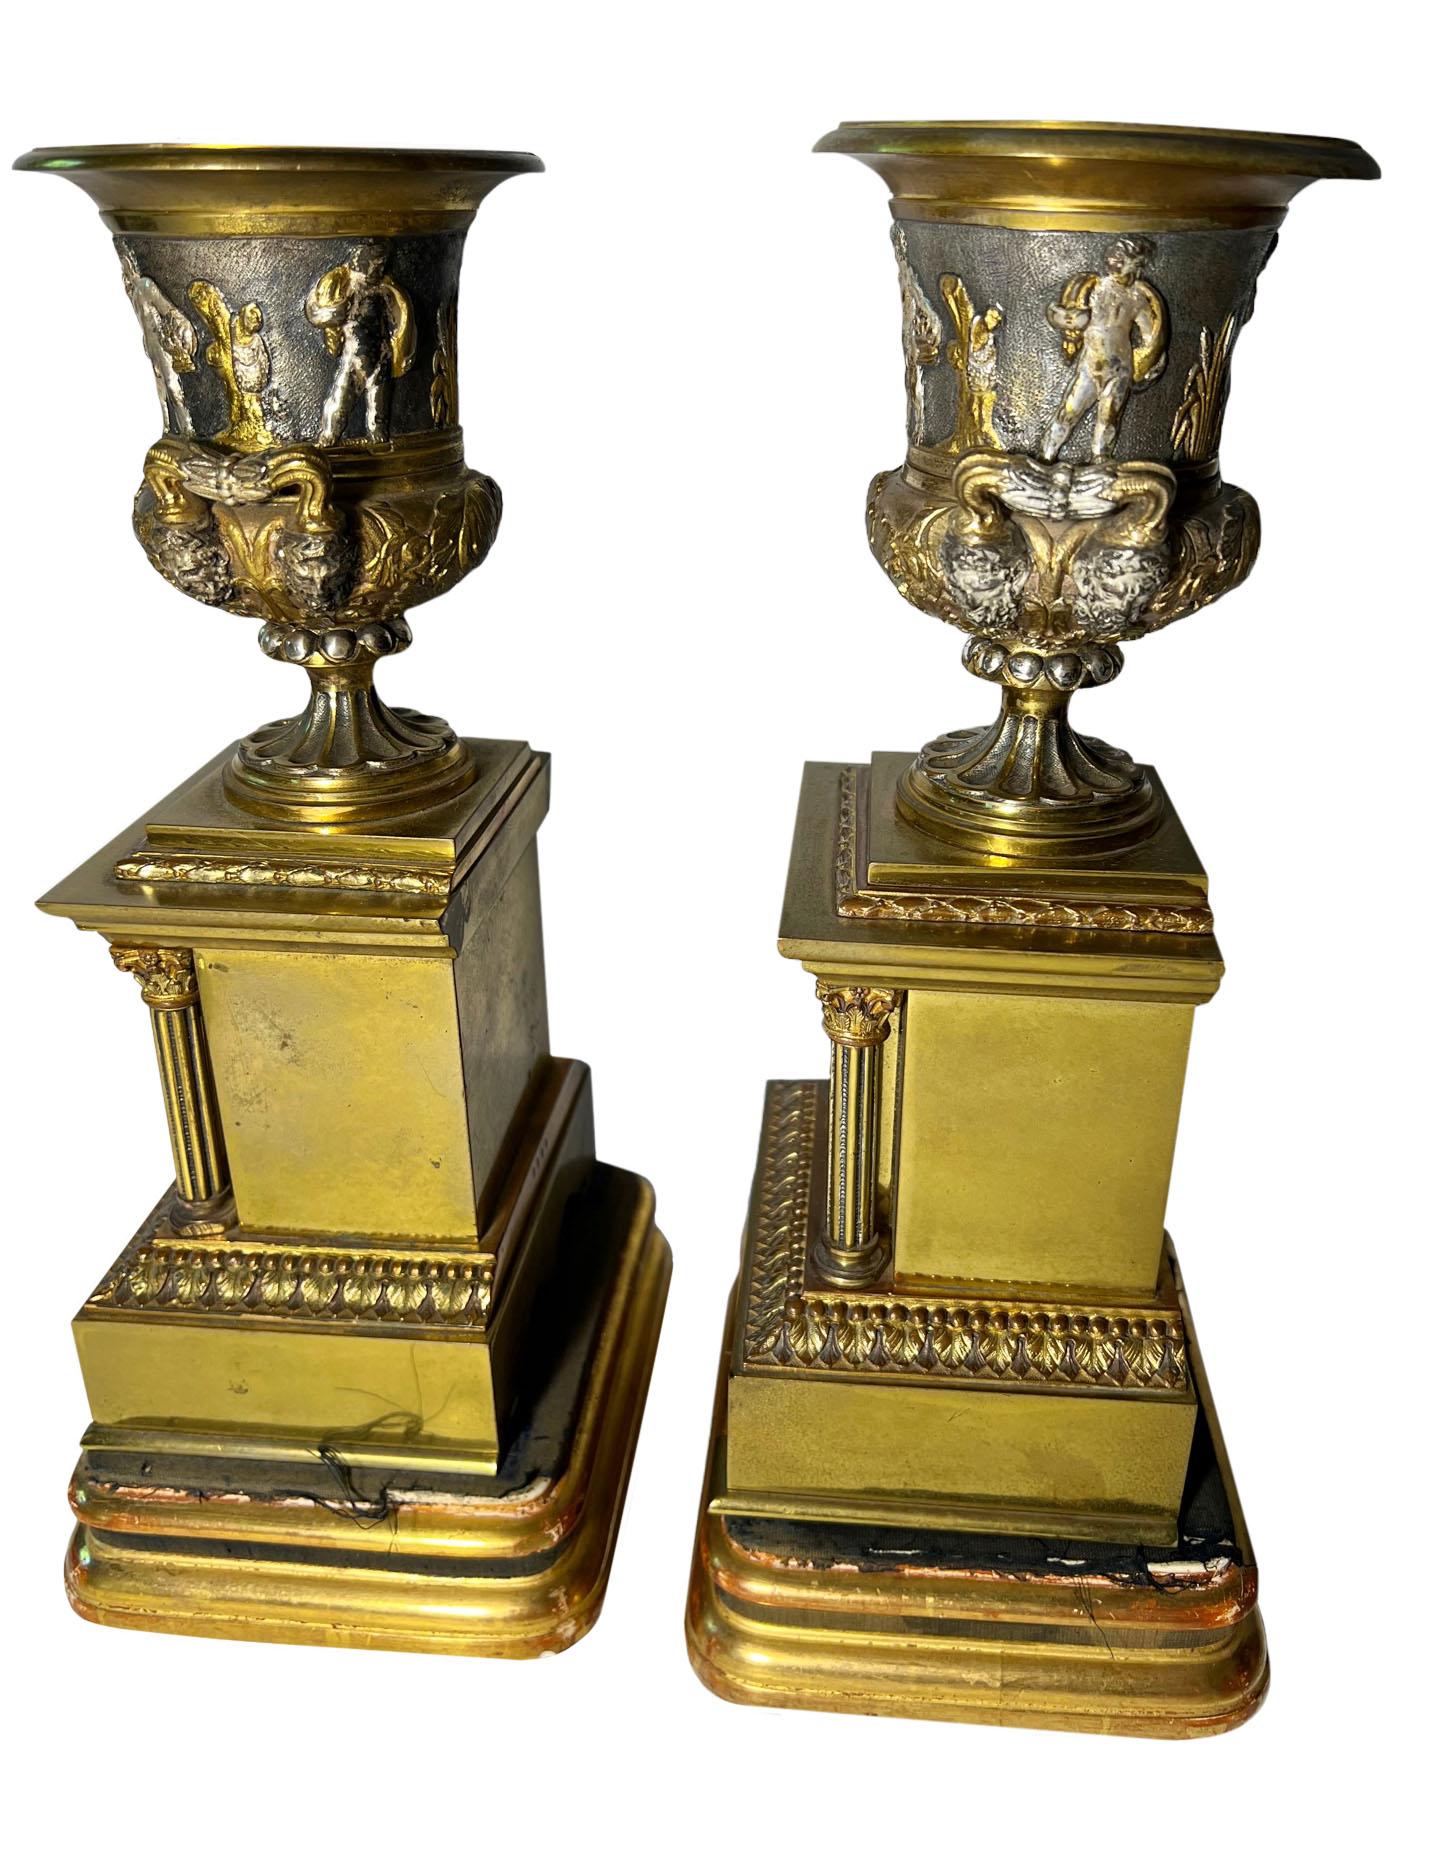 Ein Paar Bronze-Urnen auf Holzständern mit Säulen. Jede Urne ist mit dem Leben der Römer in einem silbernen Überzug mit Bronzefiguren umgeben. Außergewöhnliche Qualitätsarbeit. Italien, um 1880.